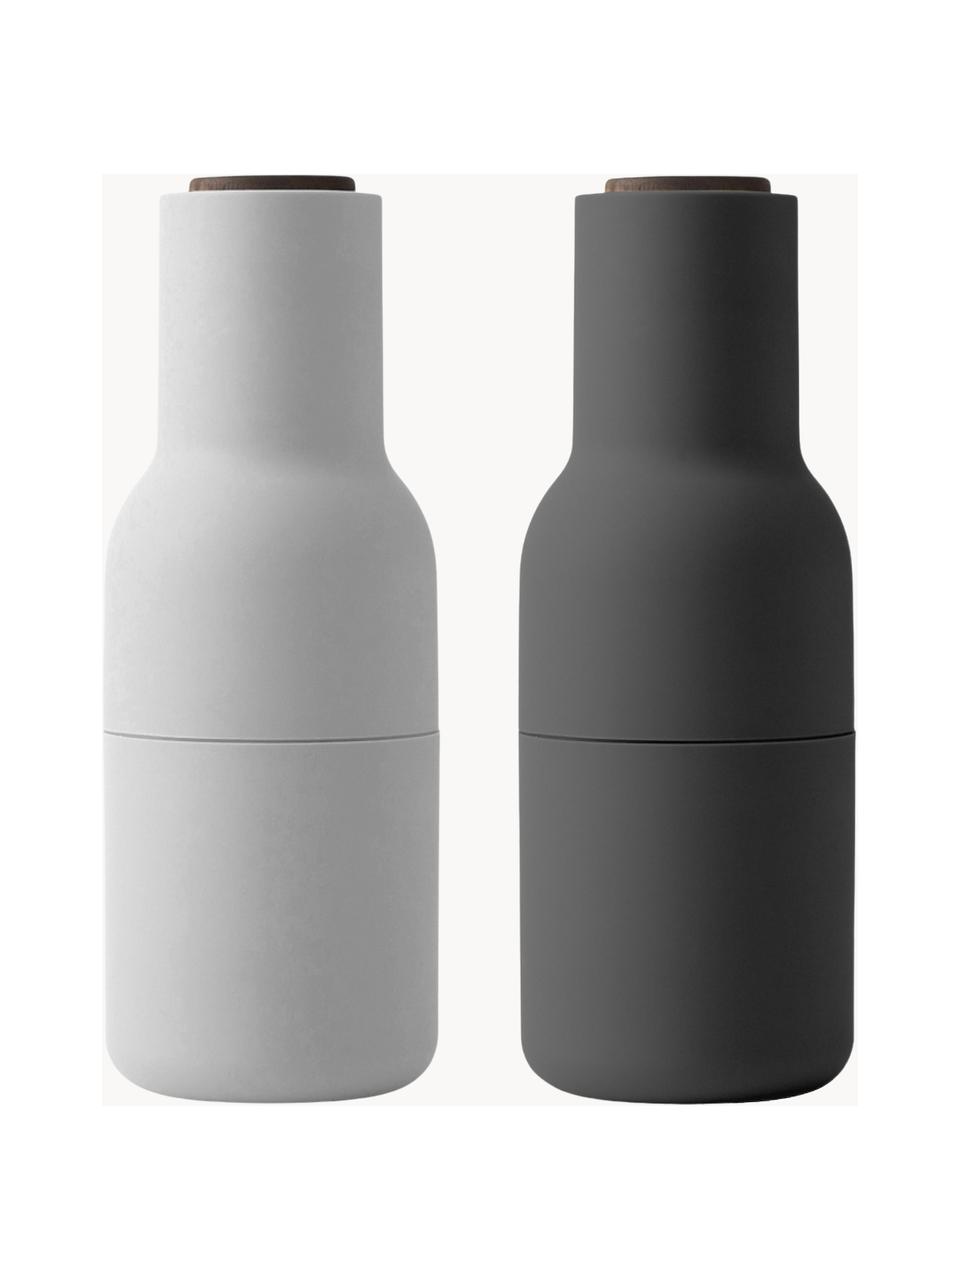 Designer zout- & pepermolen Bottle Grinder met walnoothouten deksel, set van 2, Deksel: walnoothout, Wit, donkergrijs, walnoothout, Ø 8 x H 21 cm